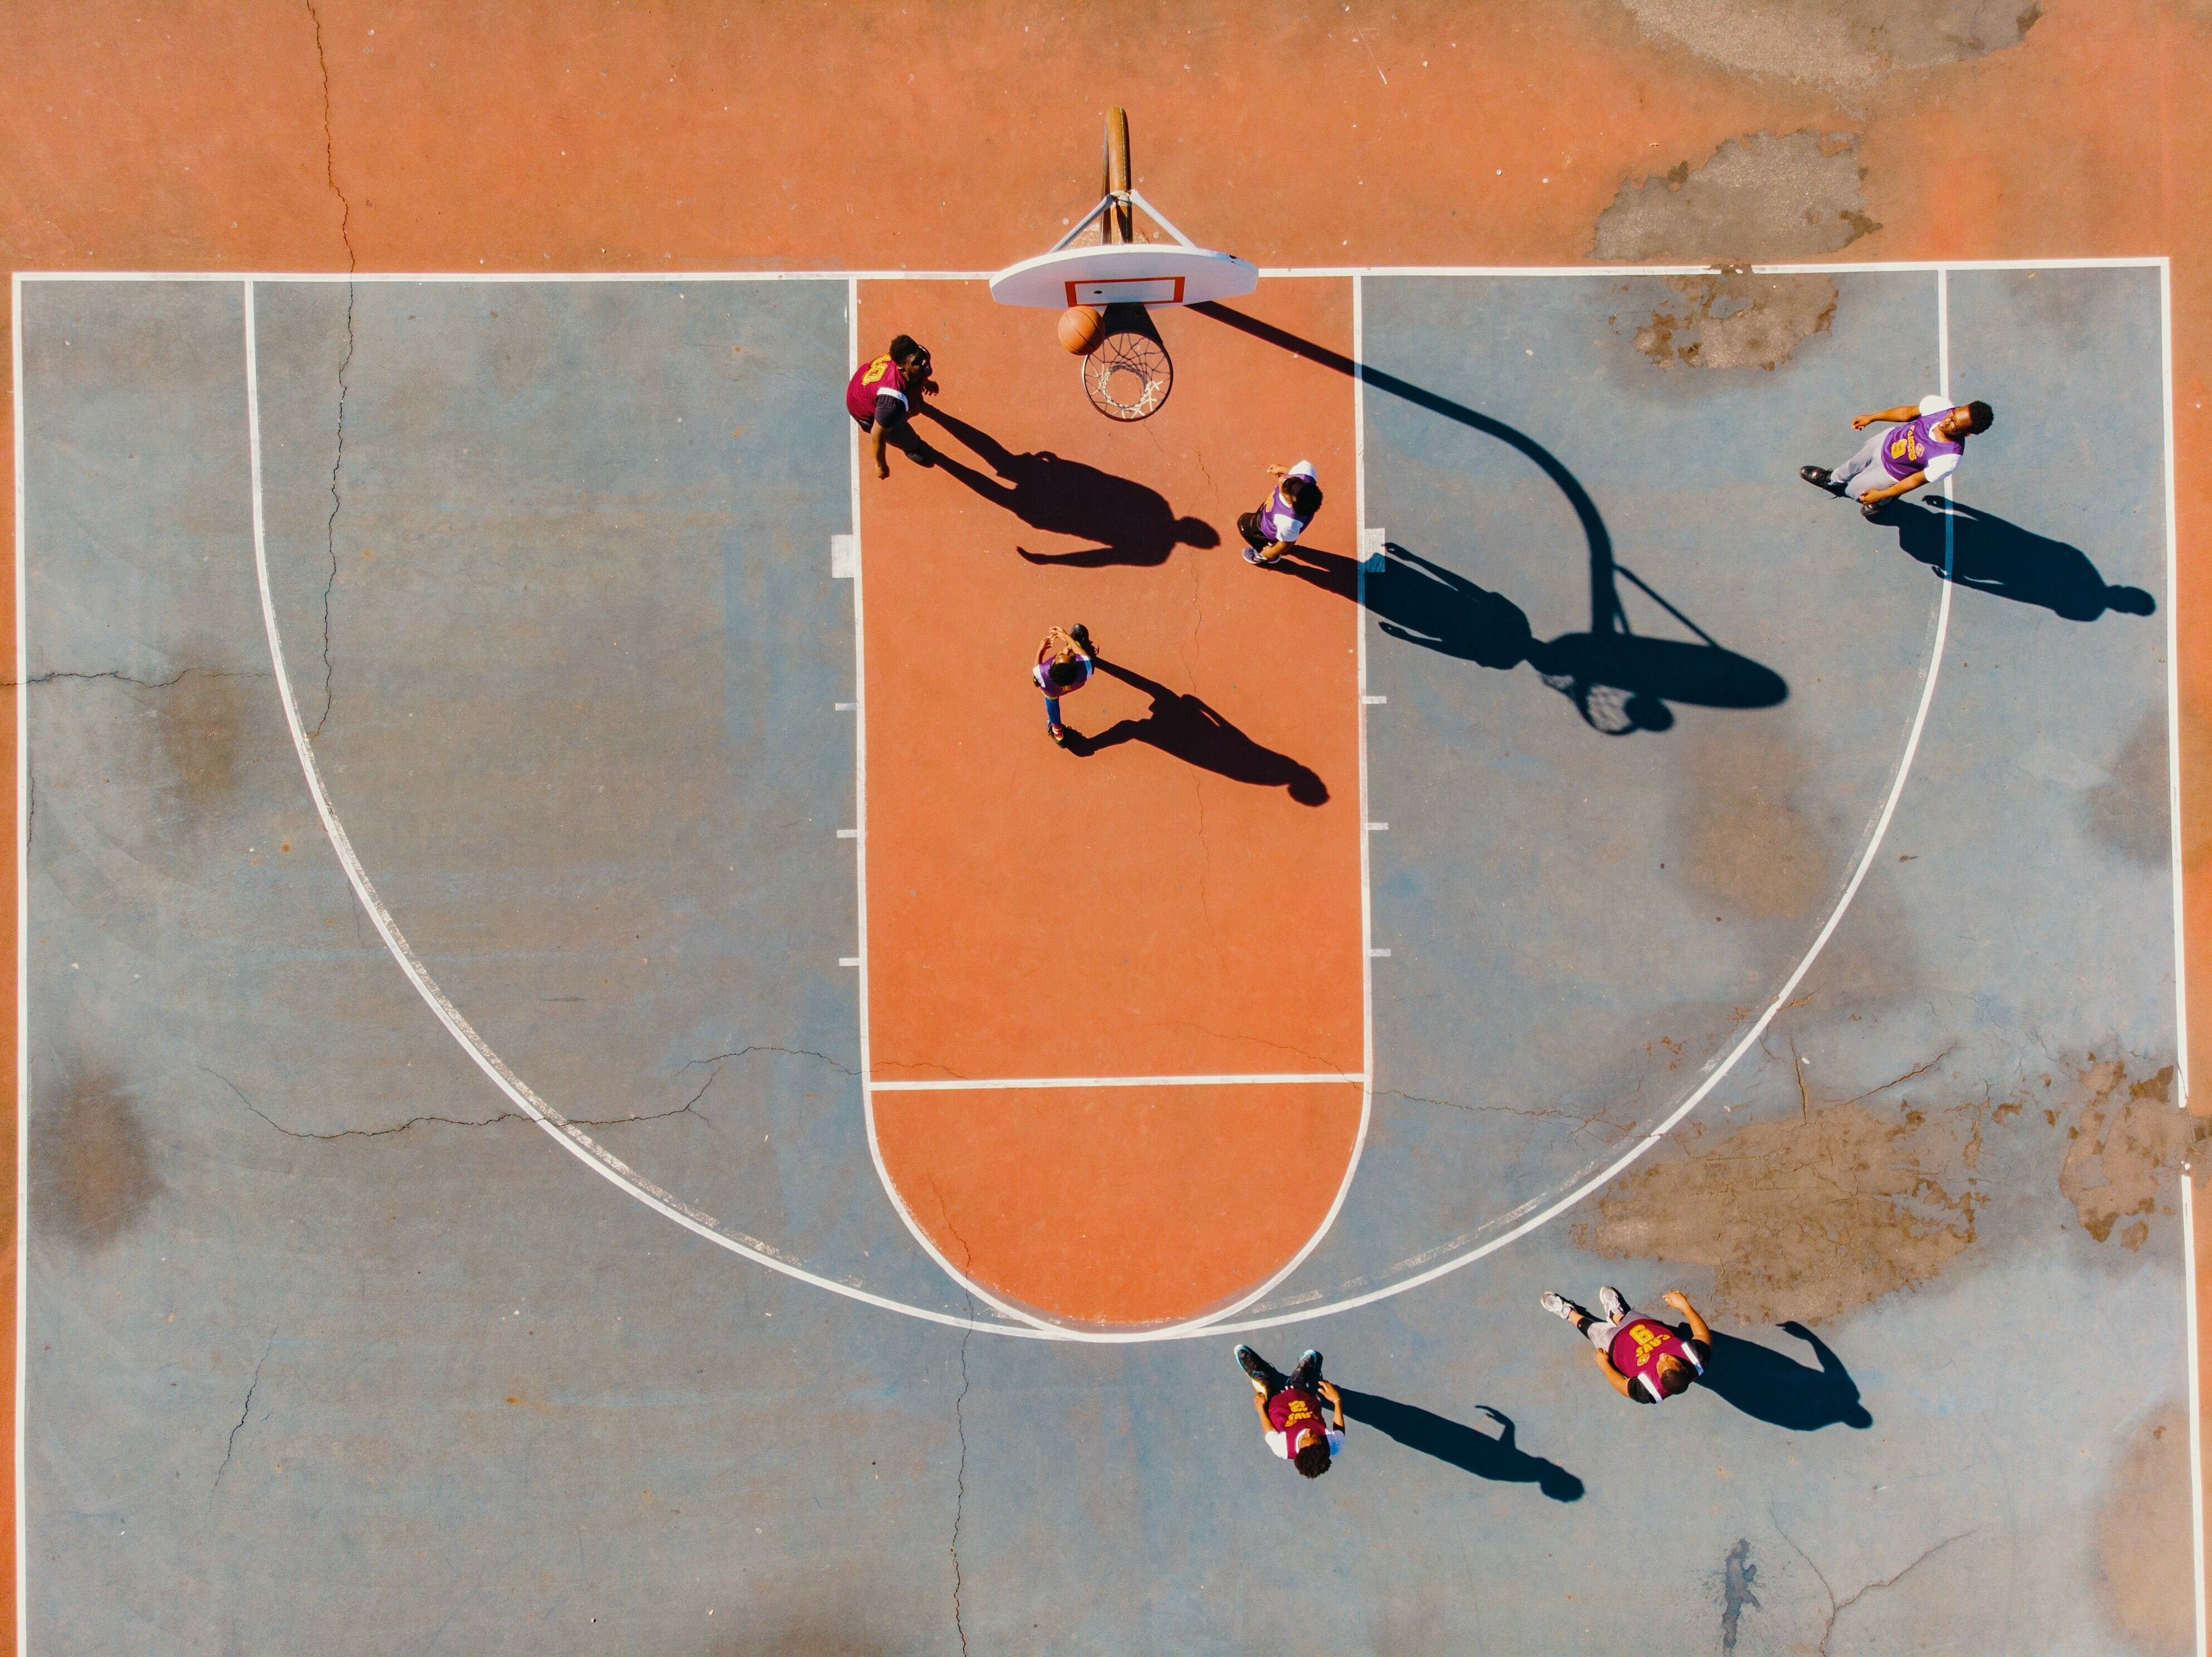 O que é basquete: história, regras e fundamentos - Significados